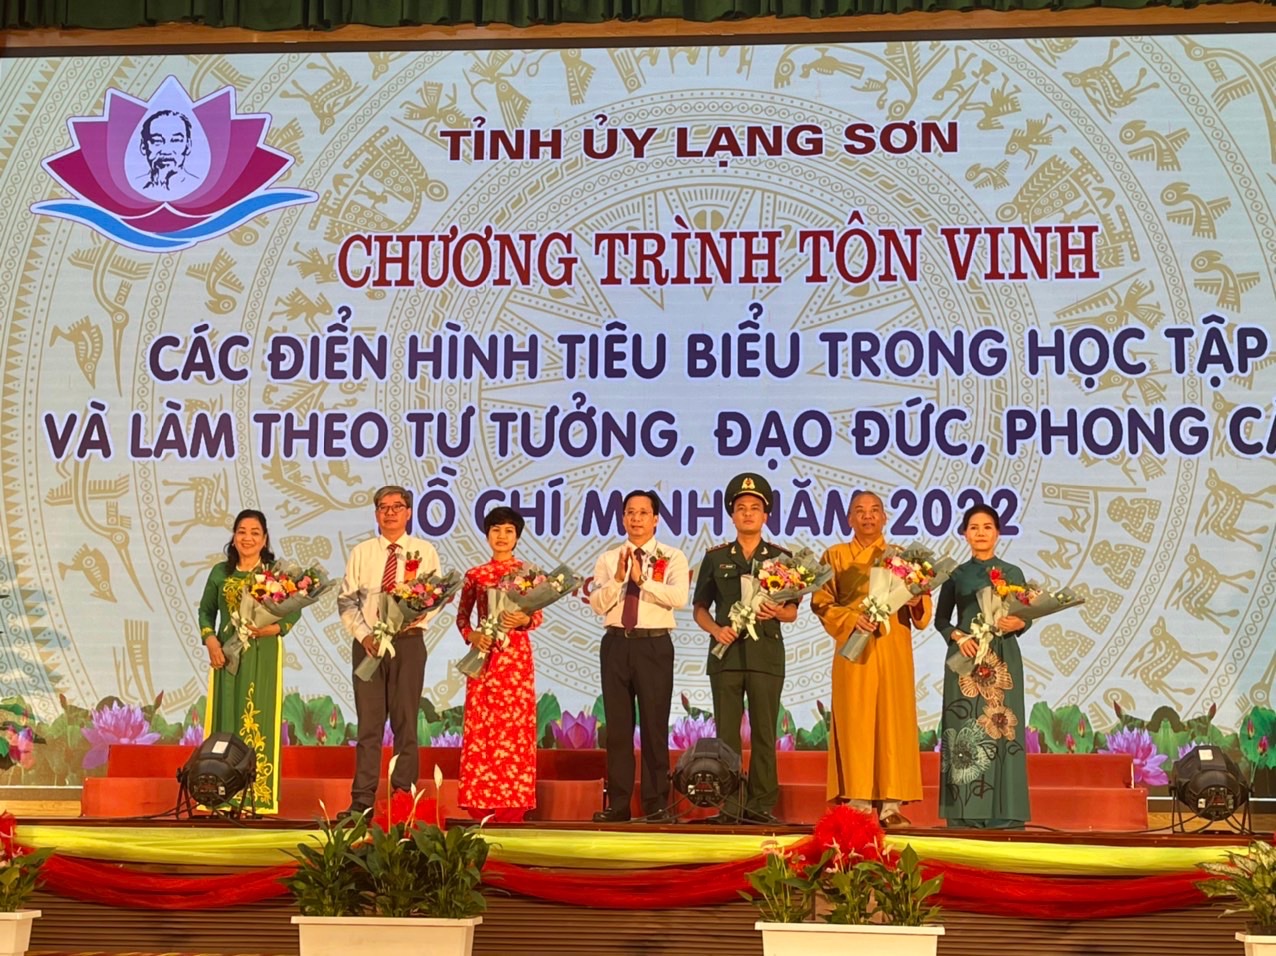 Lạng Sơn: Thượng tọa Thích Quảng Truyền được tôn vinh trong chương trình tôn vinh các điển hình tiêu biểu trong học tập và làm theo tư tưởng, đạo đức, phong cách Hồ Chí Minh